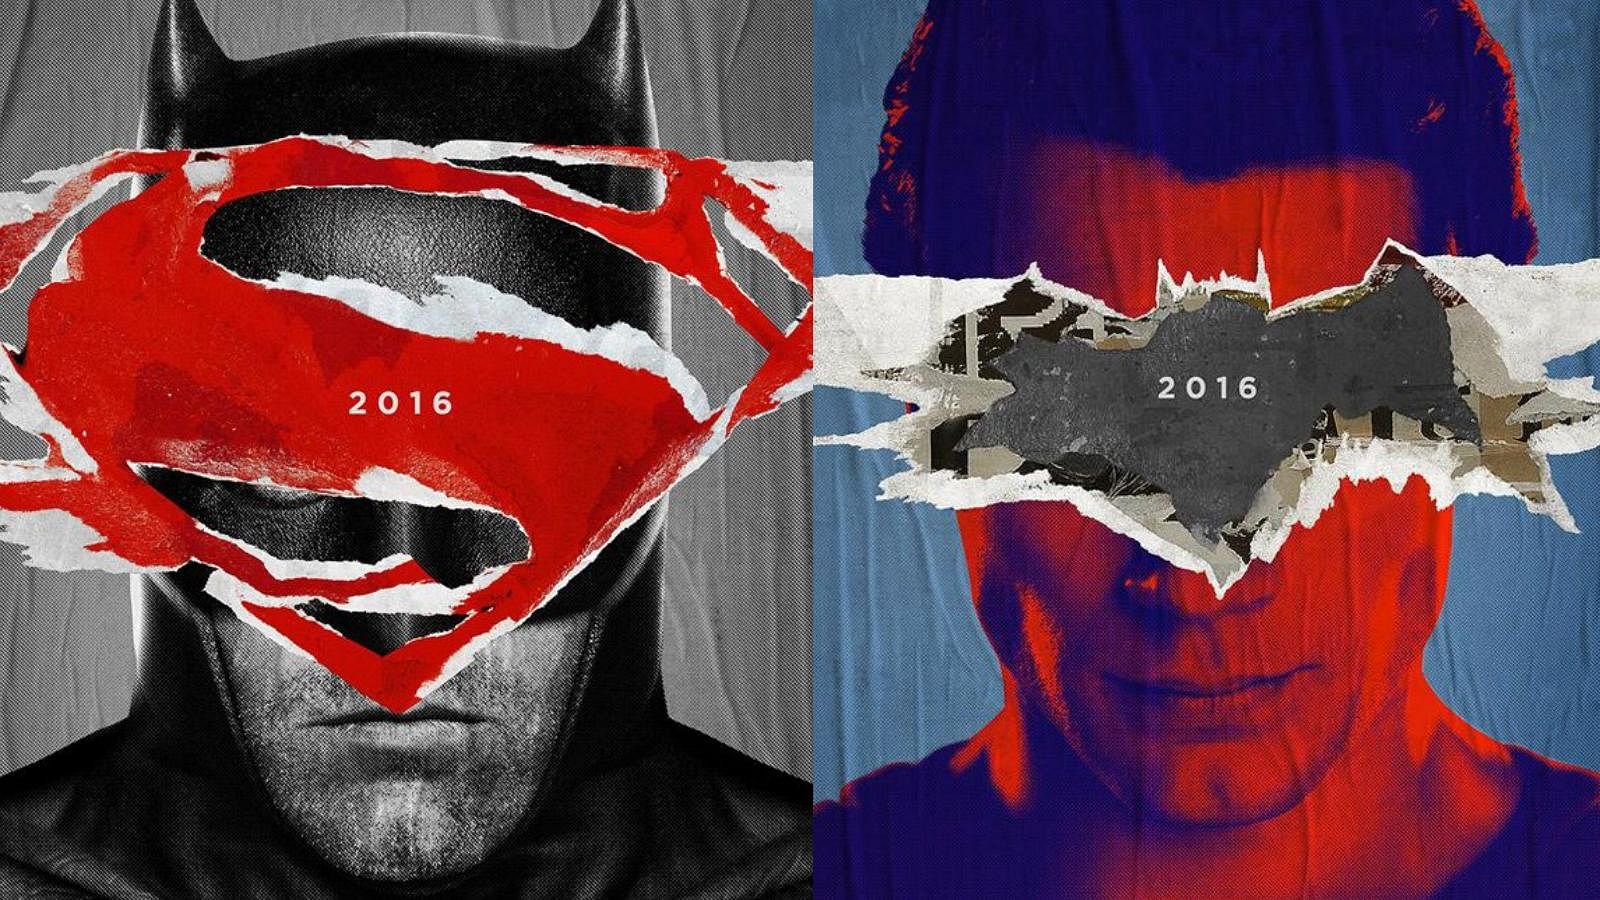 Official posters of Zach Snyder’s <em>Batman vs Superman: Dawn of Justice.</em>